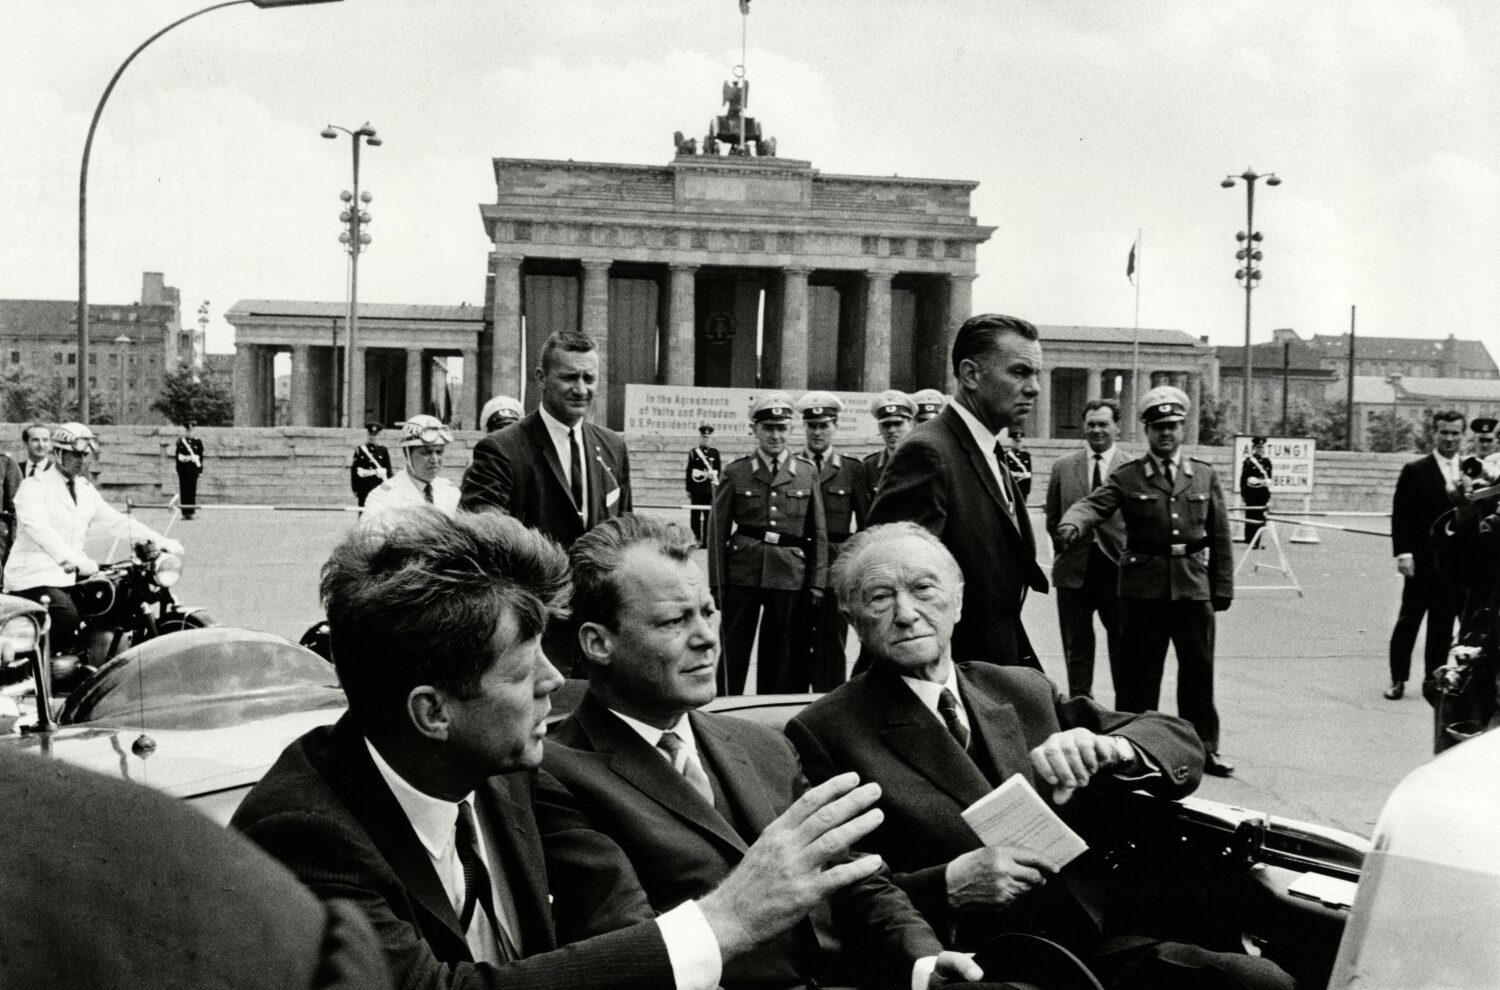 Will McBride: John F. Kennedy, Willy Brandt und Konrad Adenauer am Brandenburger Tor